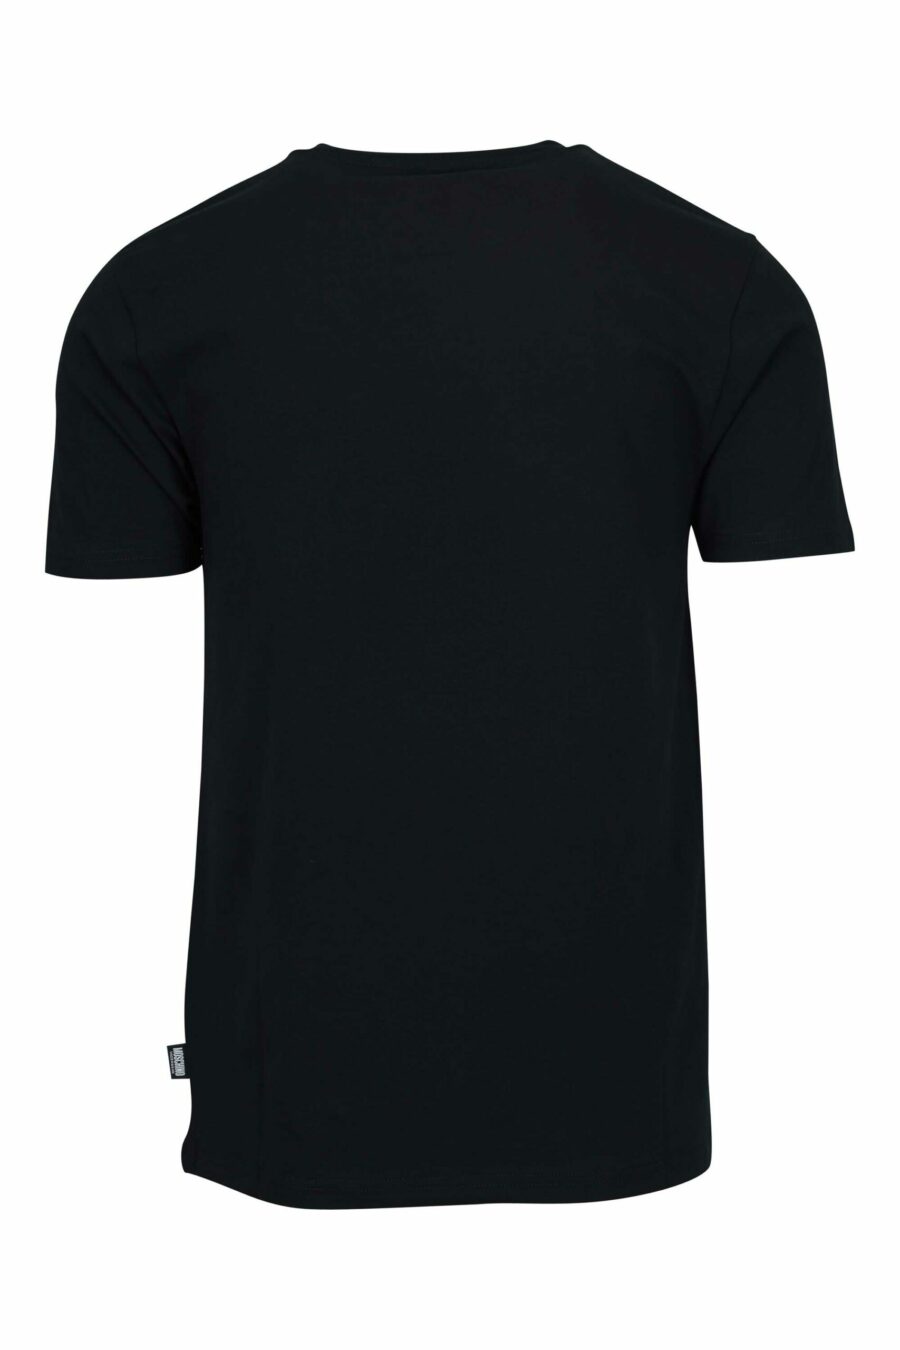 Schwarzes T-Shirt mit Mini-Logo-Bärenaufnäher "underbear" - 667113605739 1 skaliert